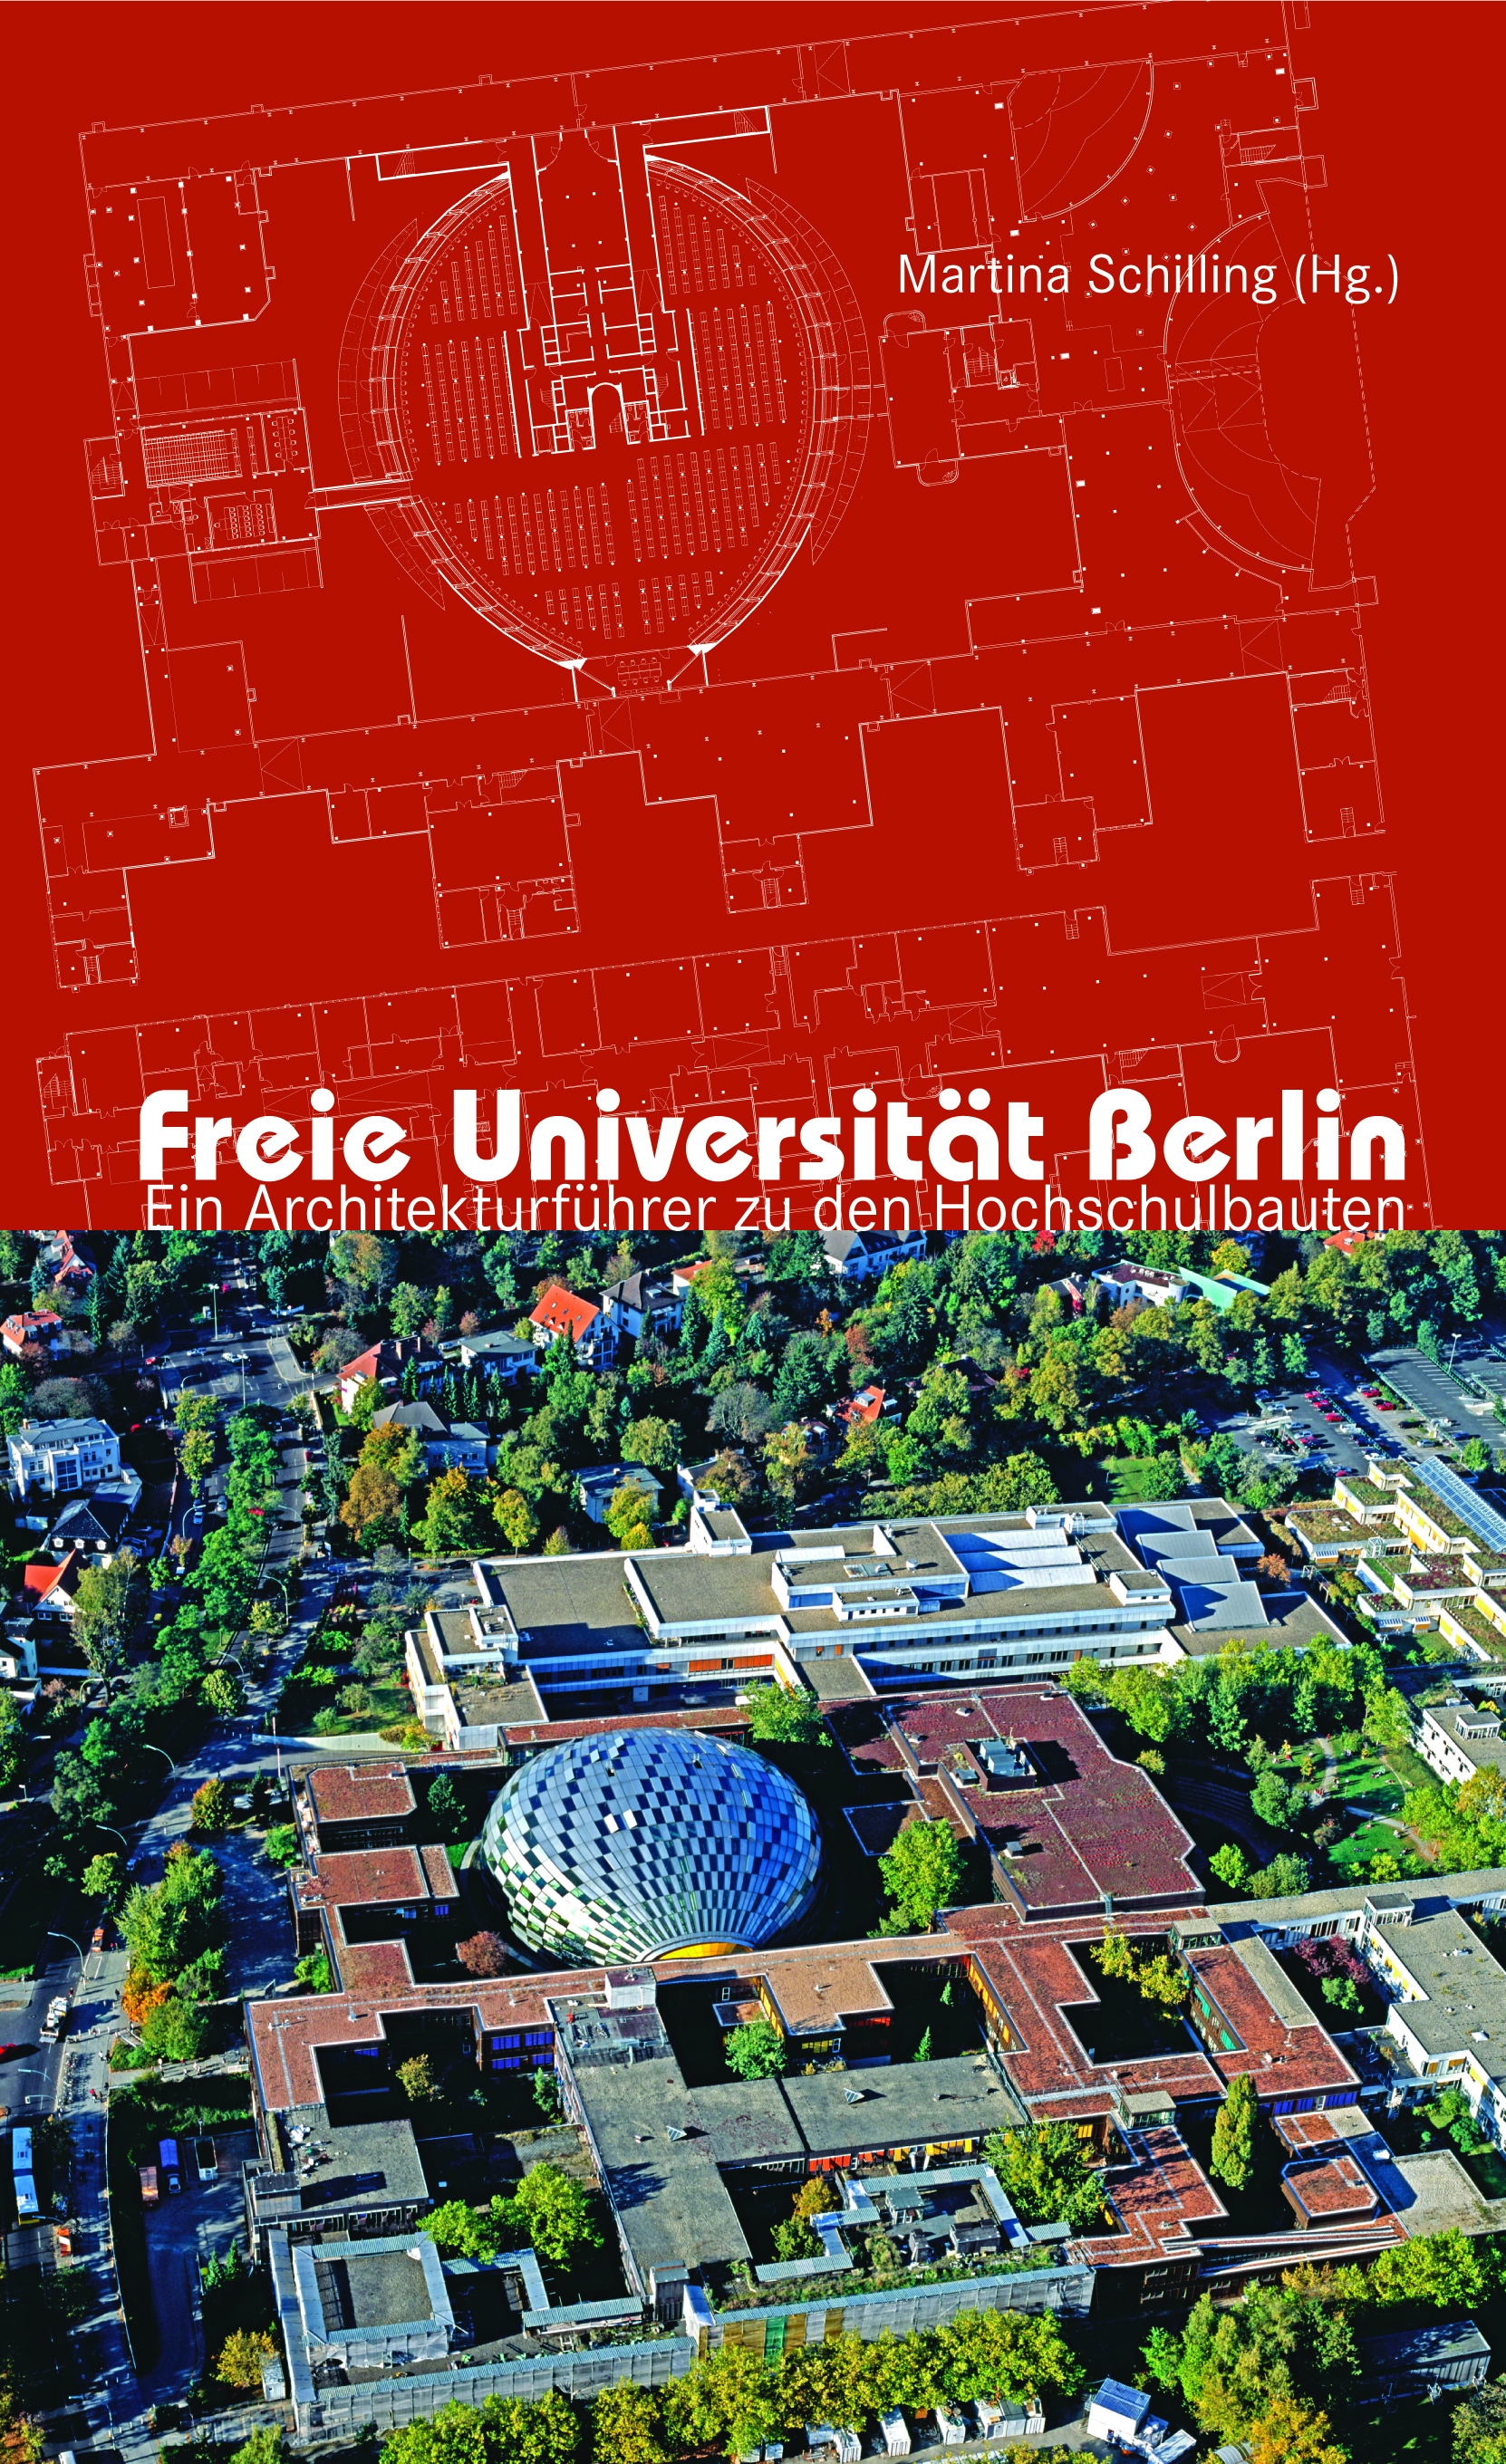 Freie Universität Berlin - Ein Architekturführer zu den Hochschulbauten